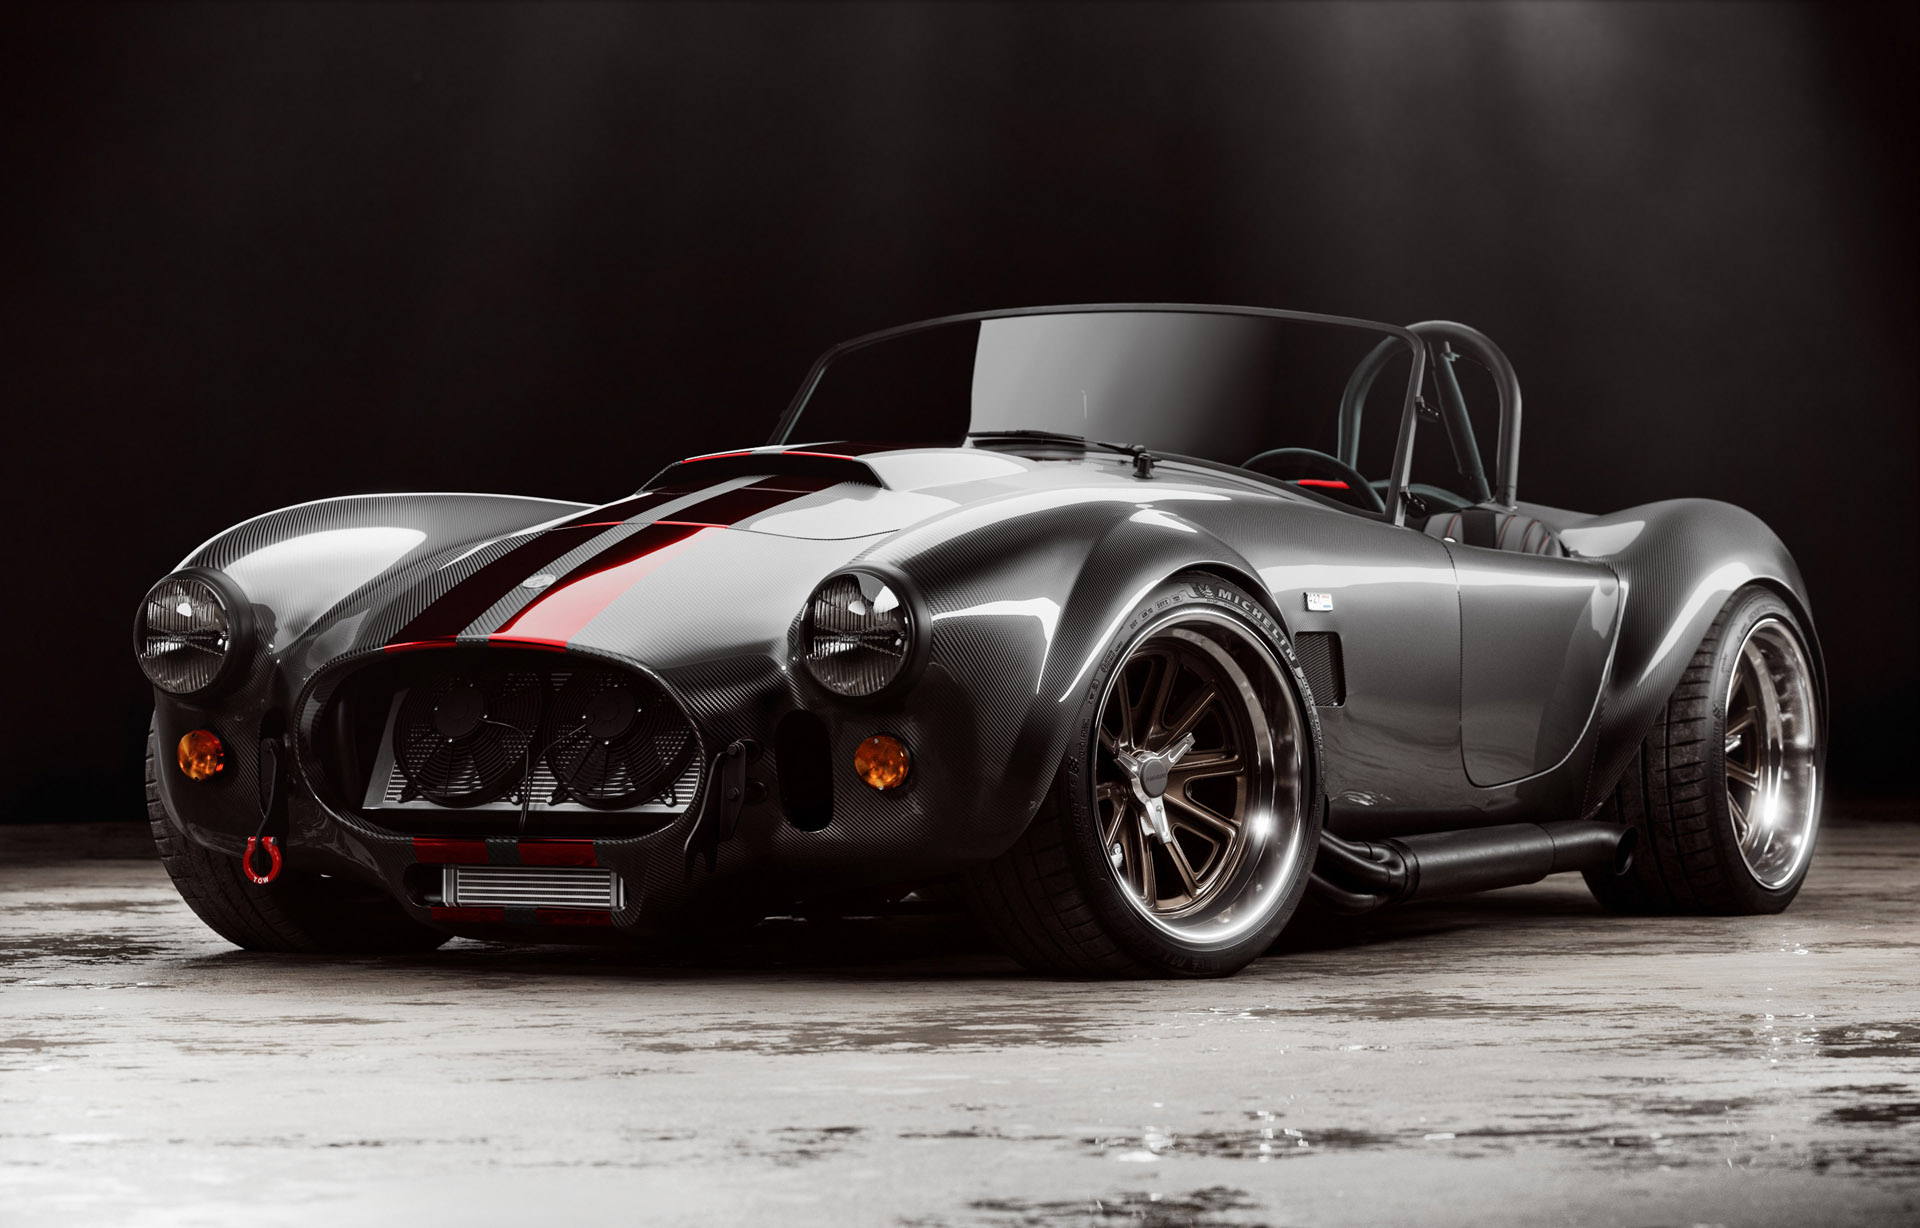 Diamond Edition Carbon Fiber Cobra Racer Car: Único en su tipo que empuja el límite